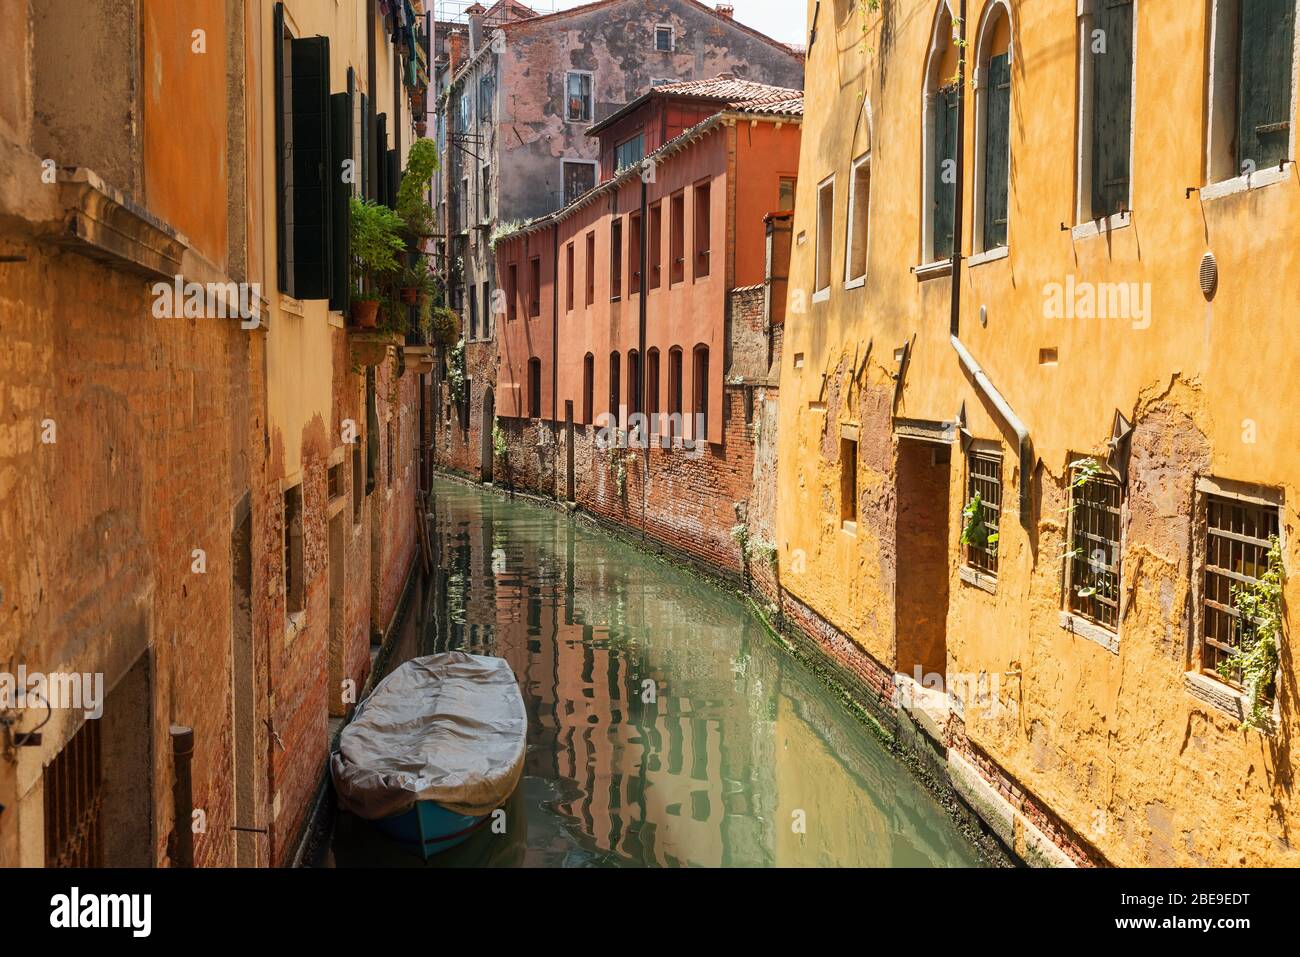 VENISE, ITALIE 23 MAI 2017 : rue traditionnelle étroite avec des gondoles et des maisons anciennes à Venise, Italie. Architecture et monuments de Venise Banque D'Images